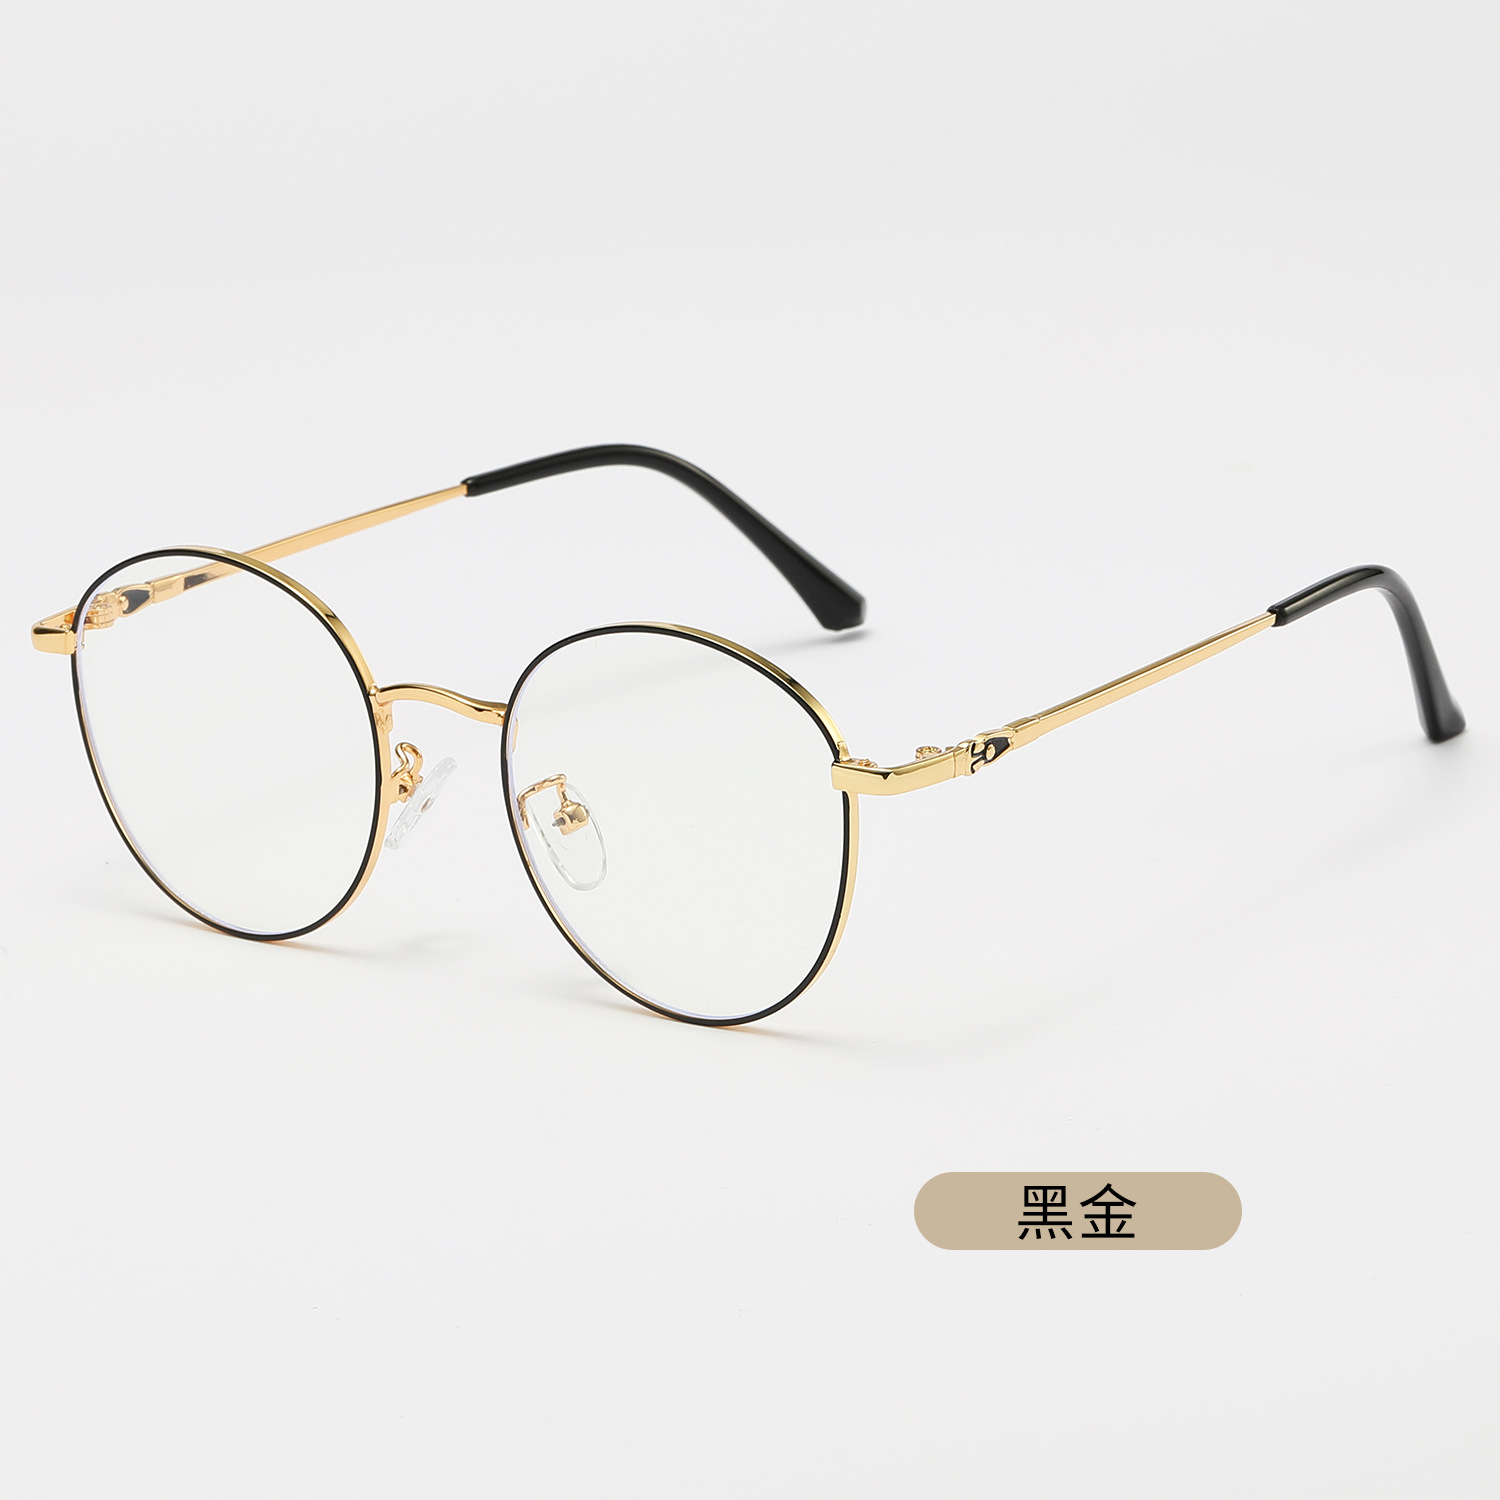 23新款圆形复古眼镜框防蓝光平光镜眼镜架可配近视眼镜架圆形眼镜